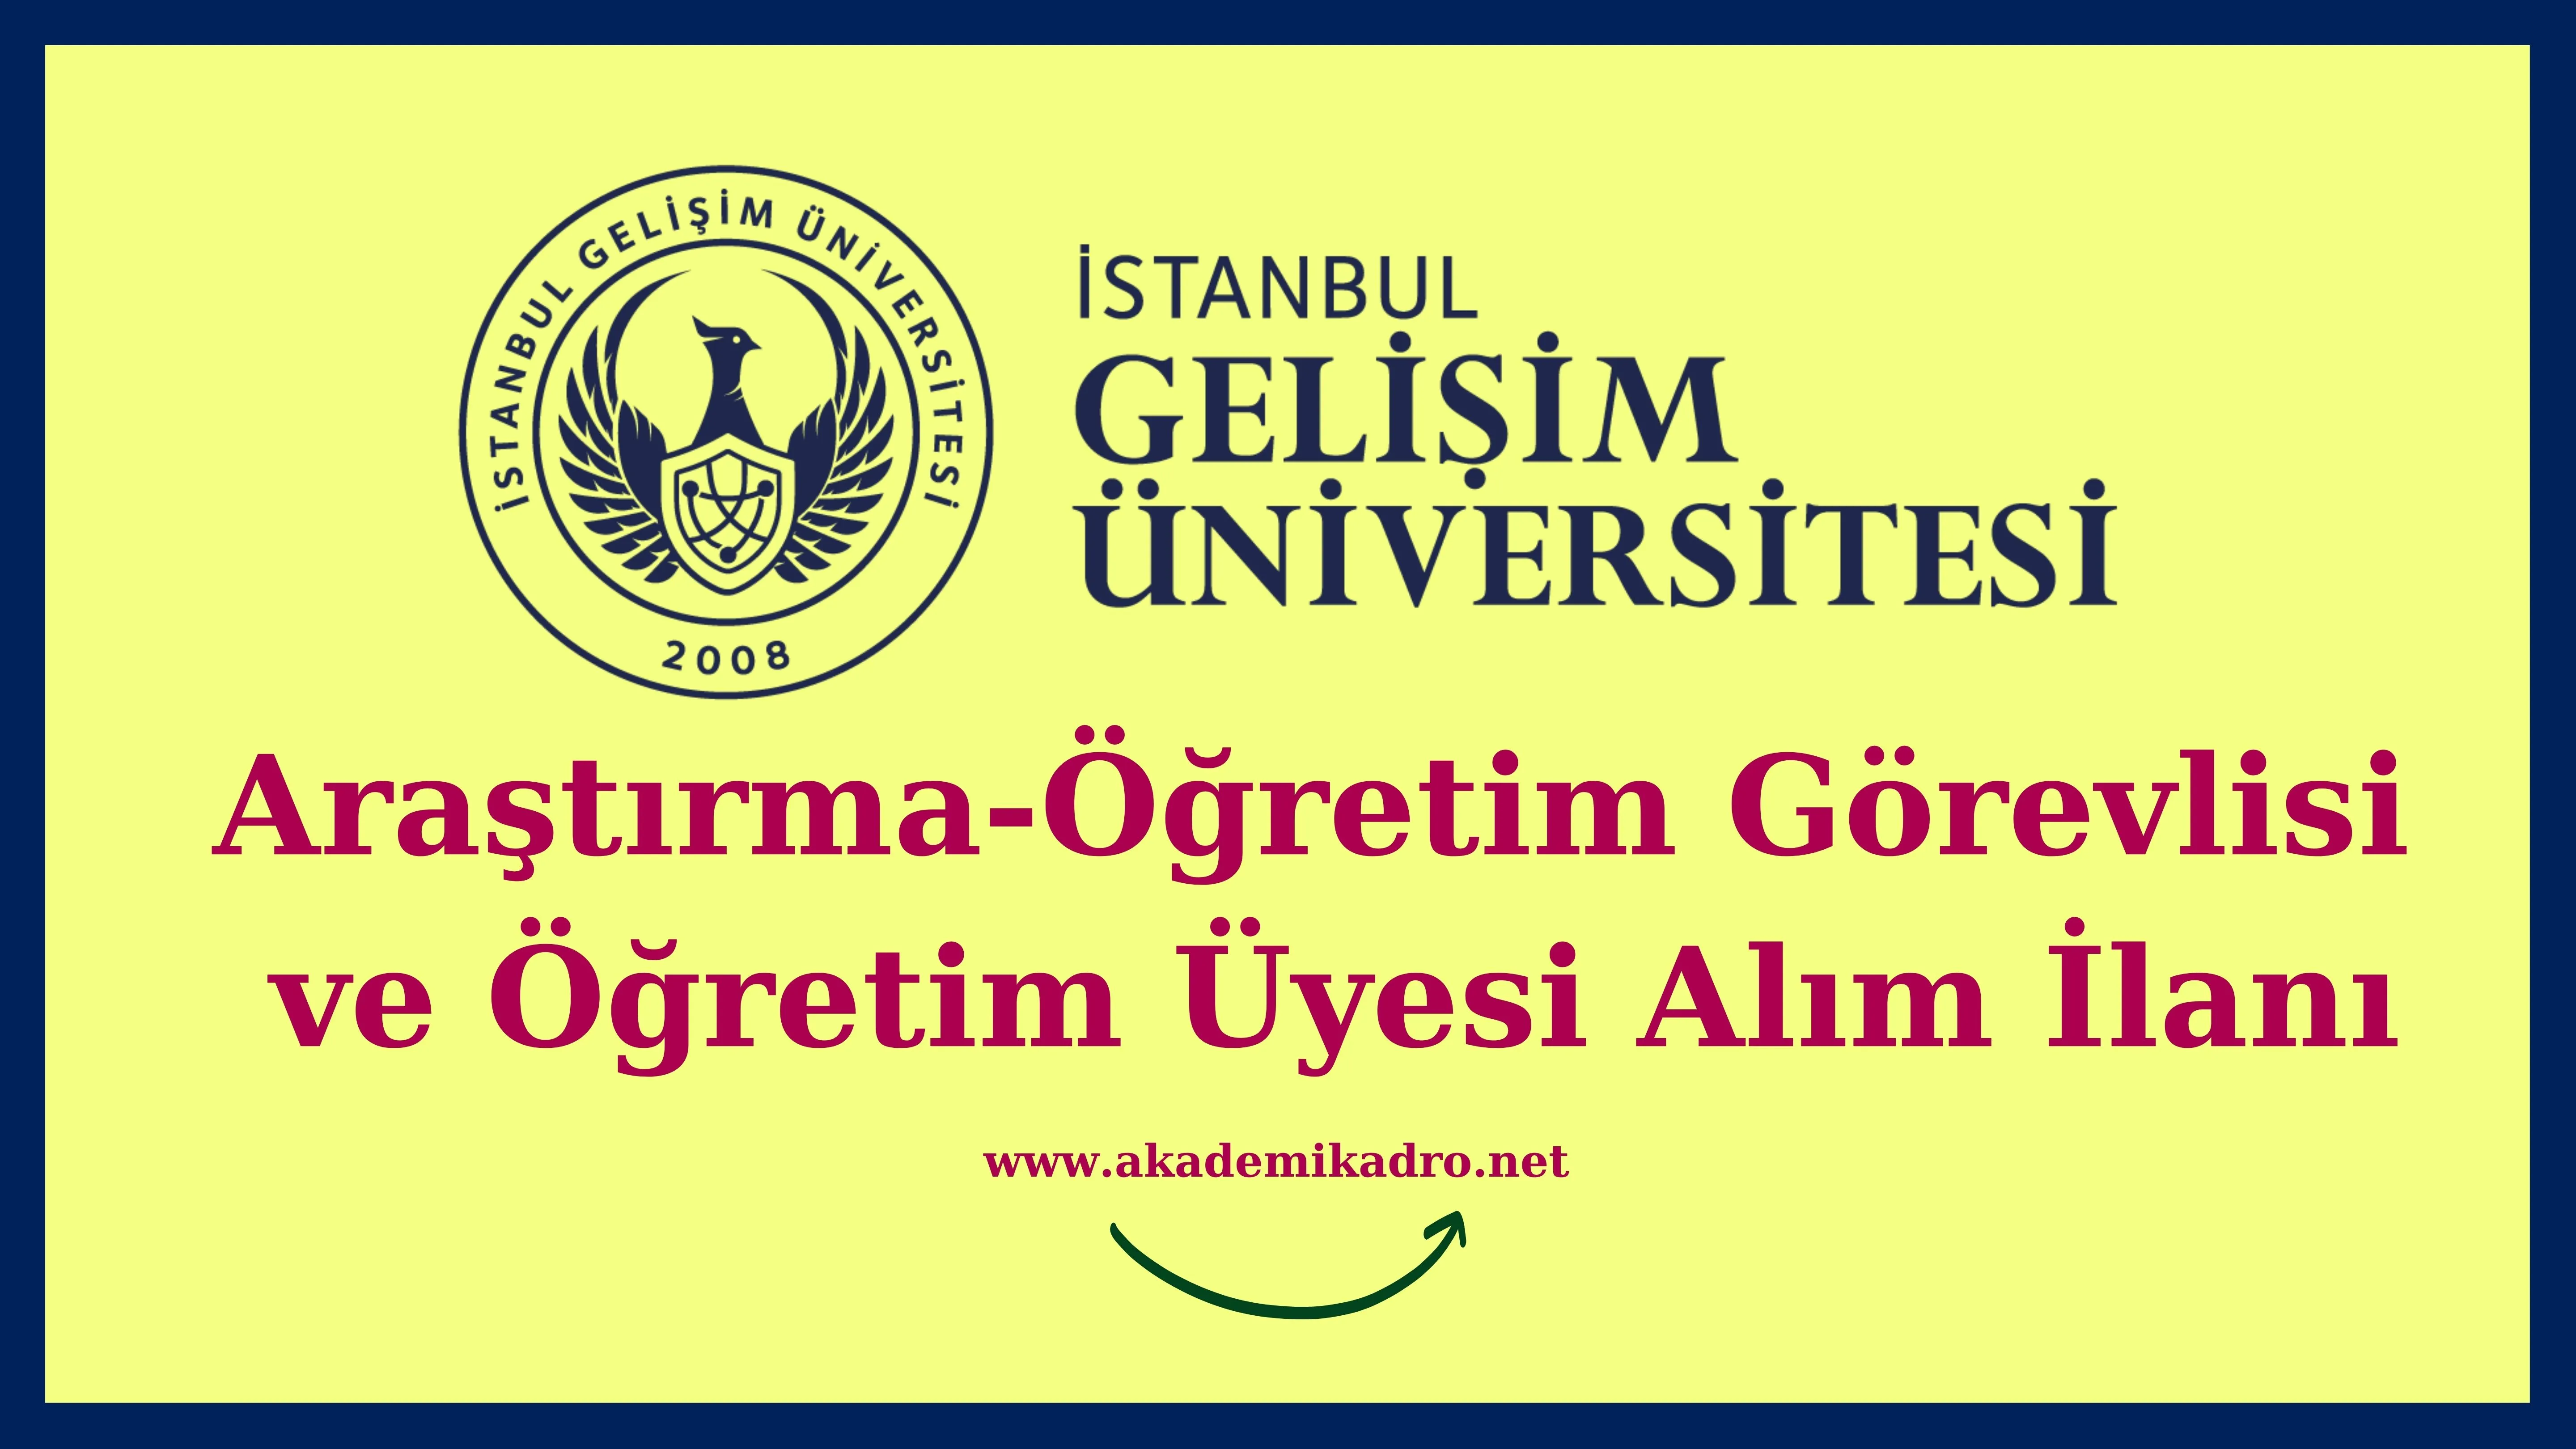 İstanbul Gelişim Üniversitesi 22 Araştırma görevlisi ve 129 Öğretim üyesi alacak. Son başvuru tarihi 31 Mart 2023.